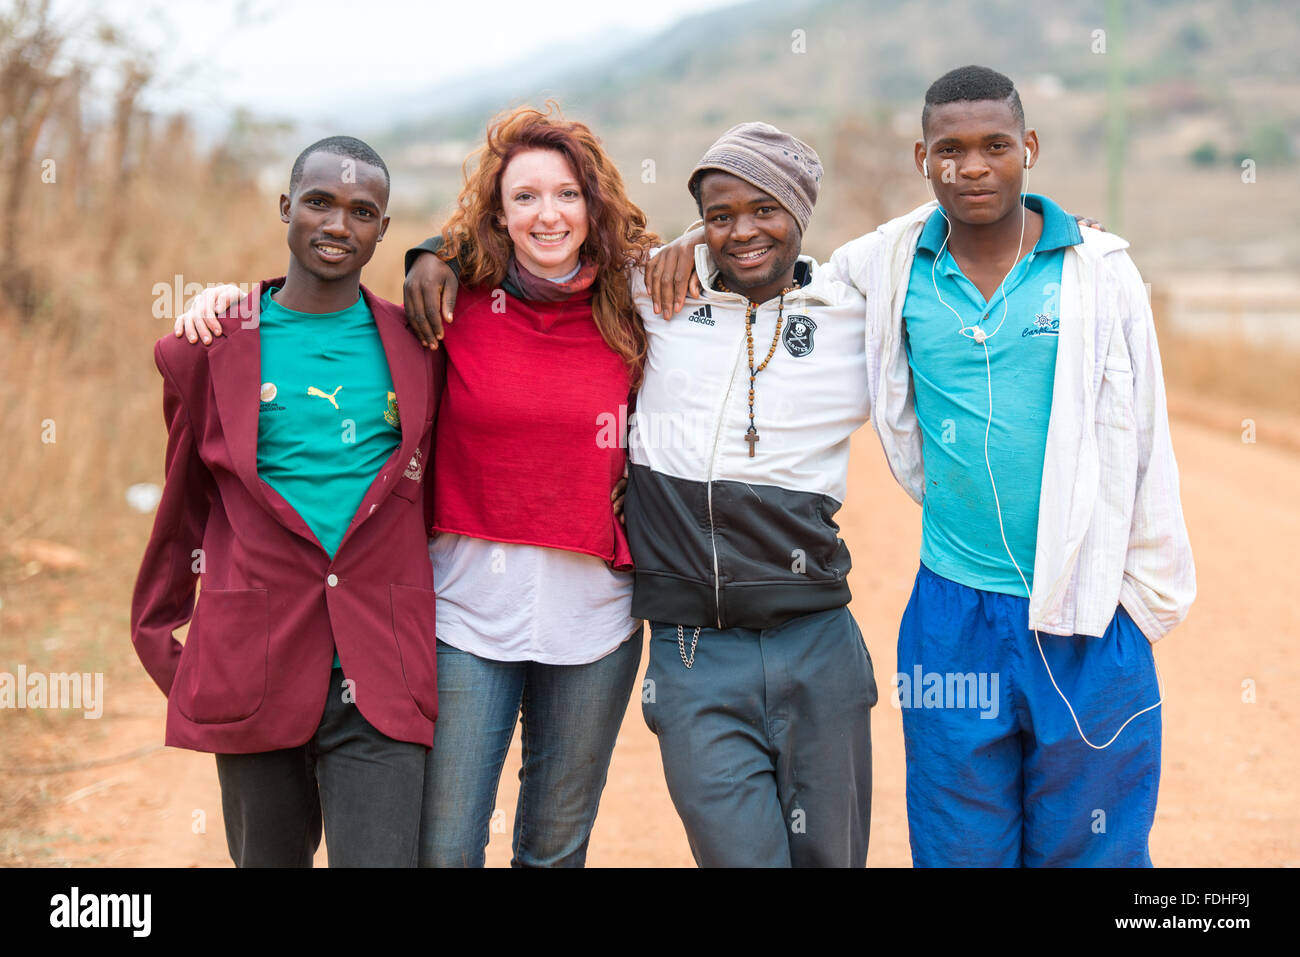 Gruppenfoto eines weiblichen Touristen mit 3 lokalen jungen Männern in der Hhohho Region von Swasiland, Afrika. Stockfoto